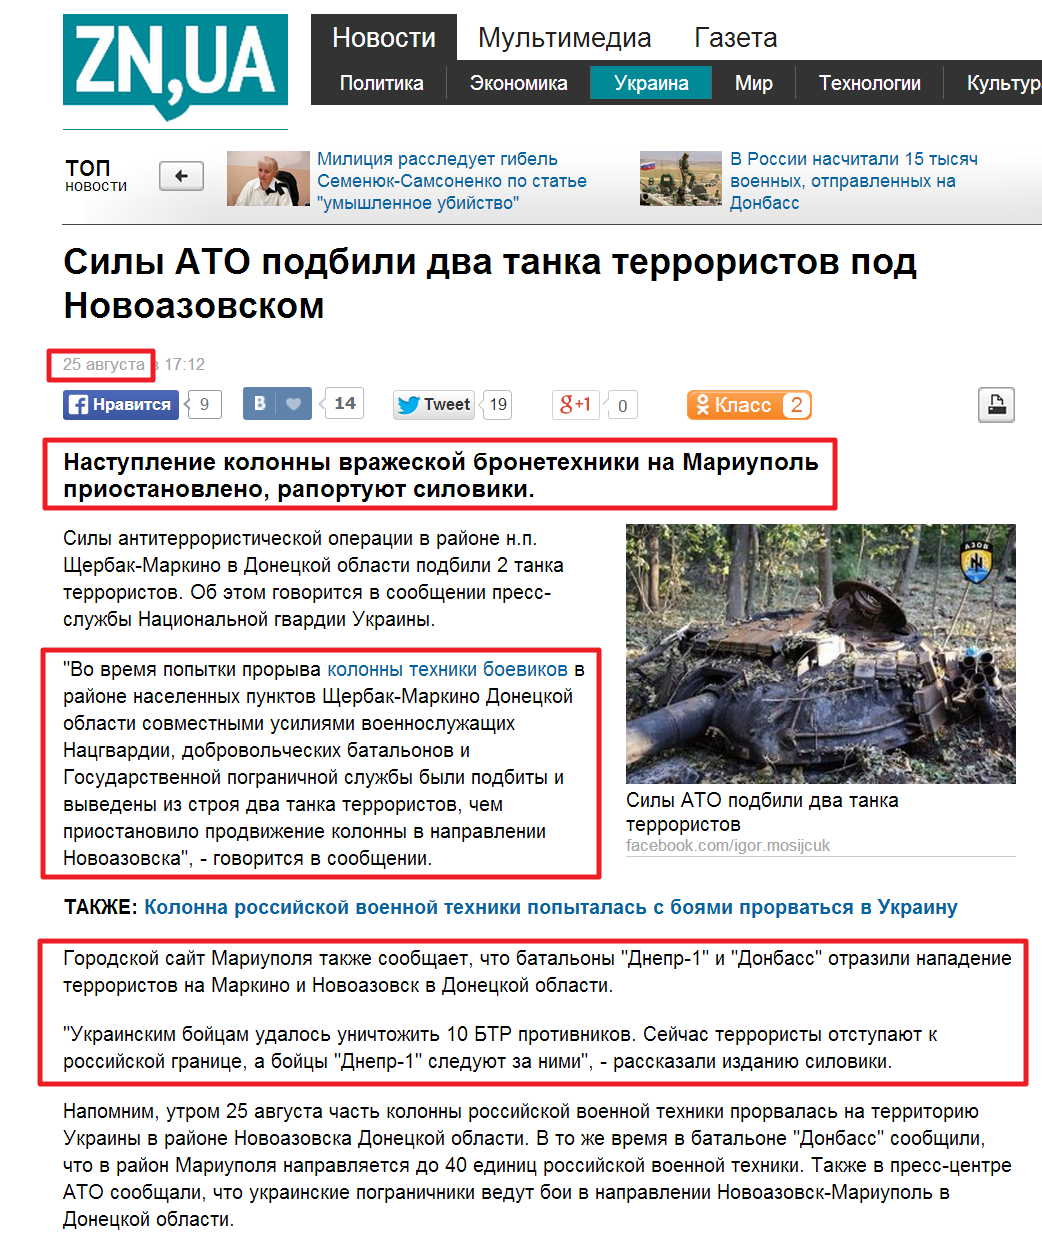 http://zn.ua/UKRAINE/sily-ato-podbili-dva-tanka-terroristov-pod-novoazovskom-151483_.html